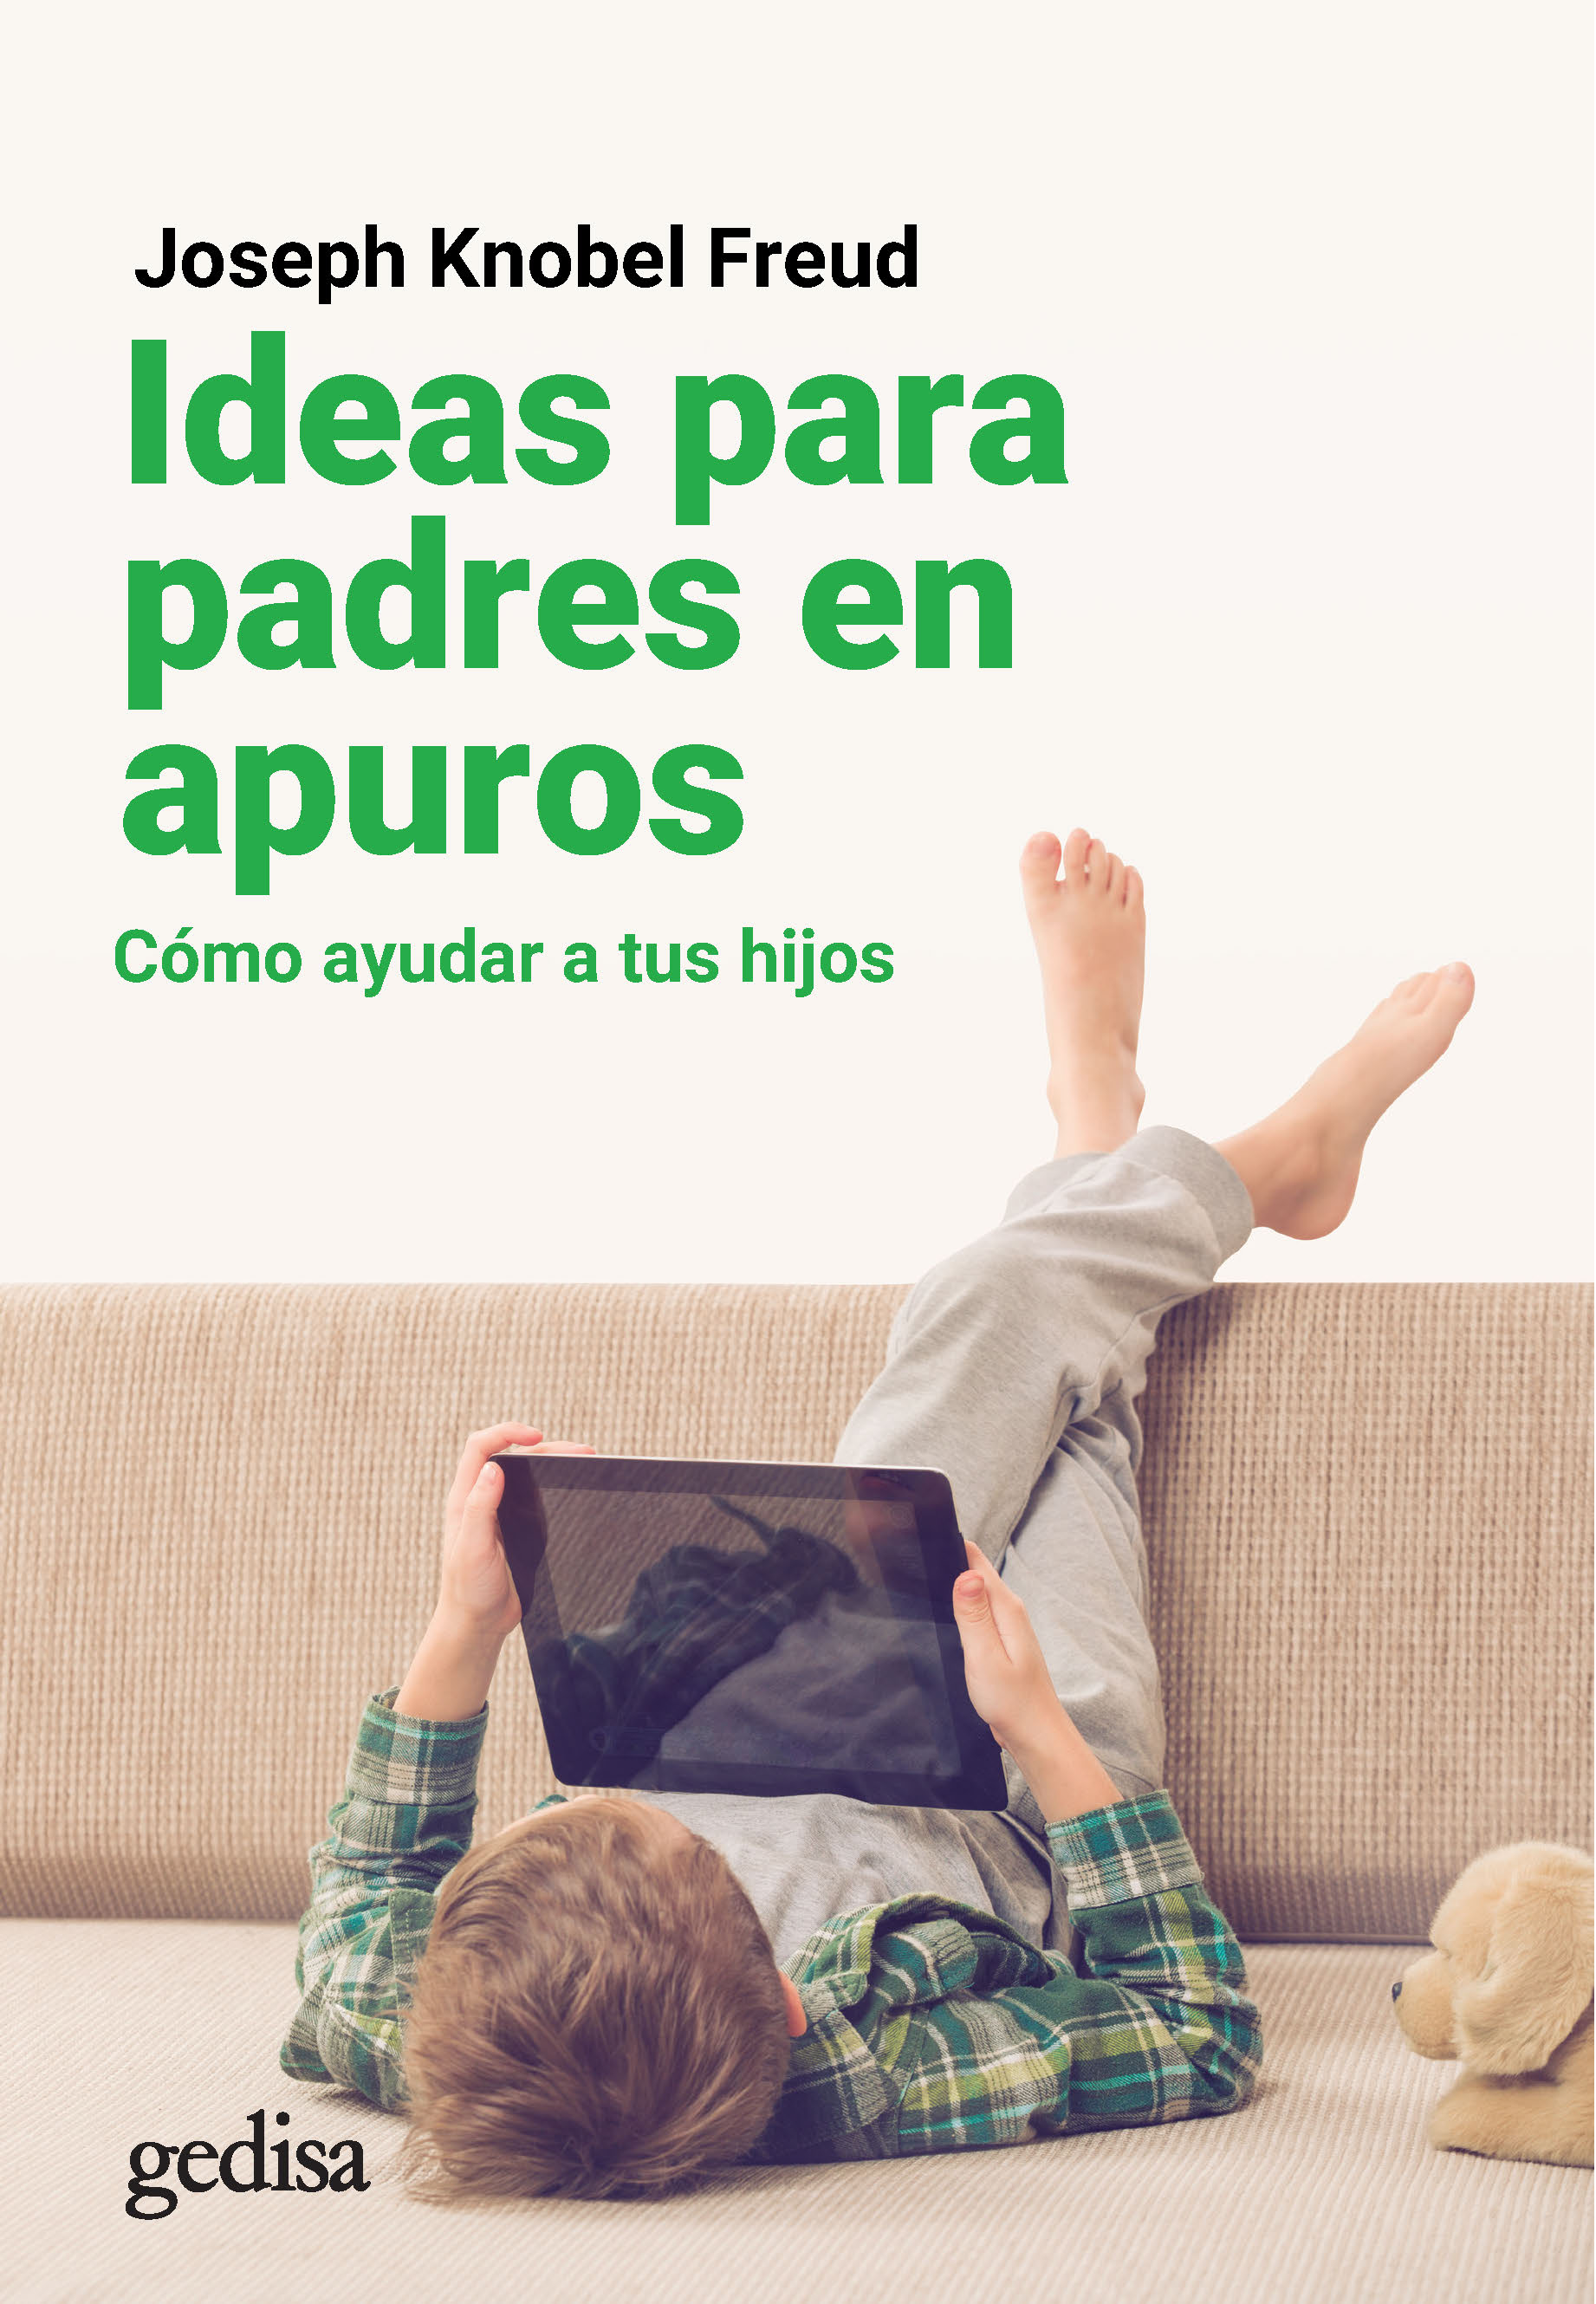 IDEAS PARA PADRES EN APUROS «Cómo ayudar a tus hijos»